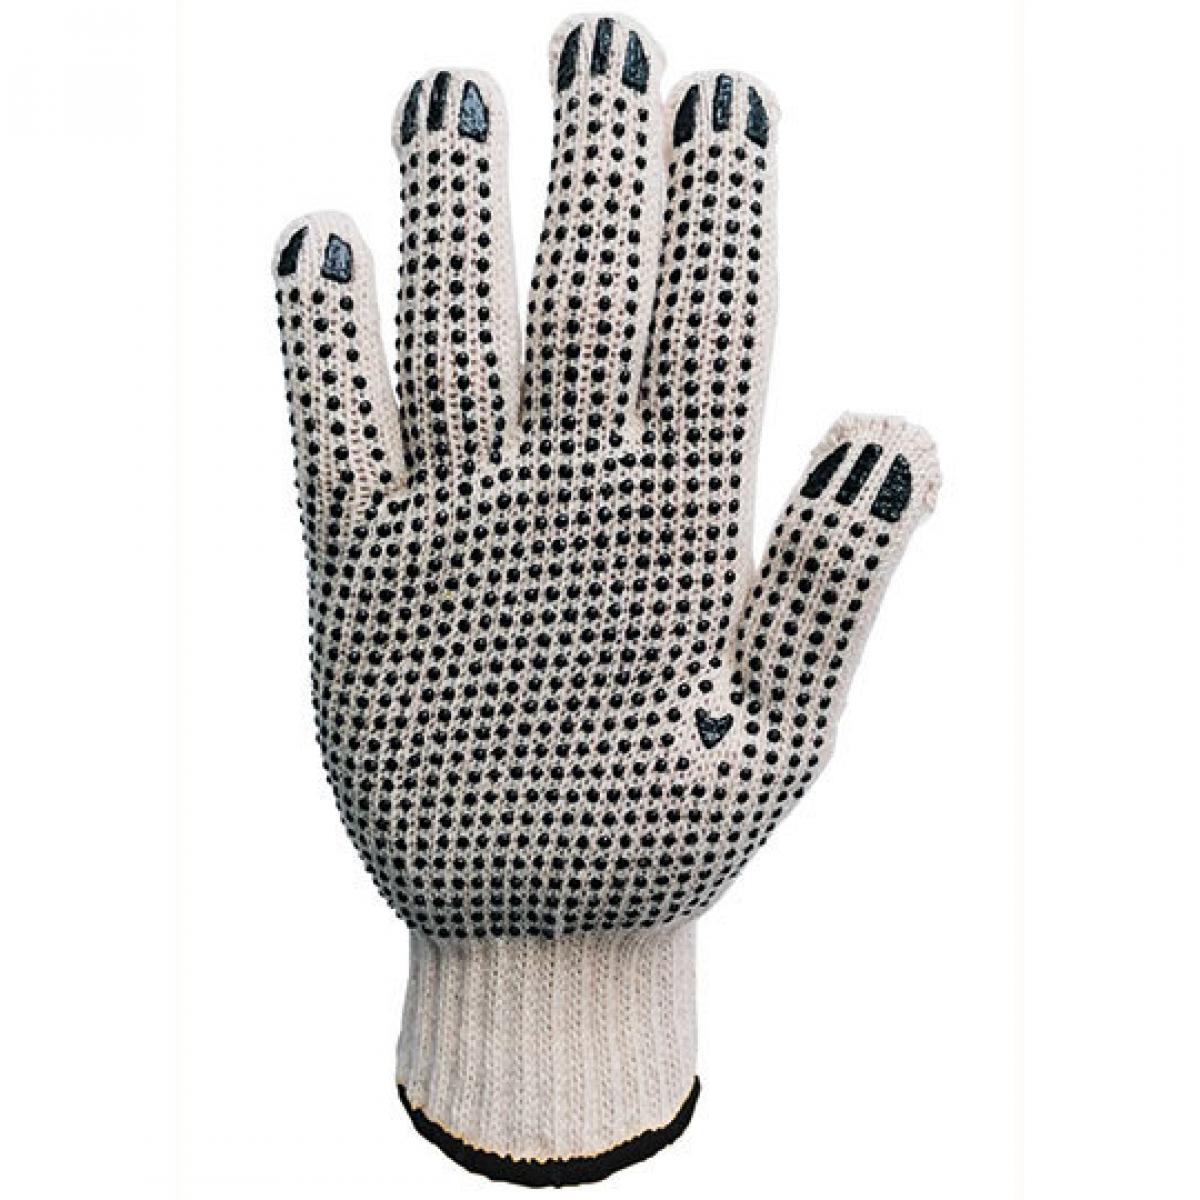 Hersteller: Korntex Herstellernummer: HSGS7/10 Artikelbezeichnung: Handschuhe, Coarse Knitted Glove, EN 21420: 2020 Cat. I Farbe: Ecru/Black